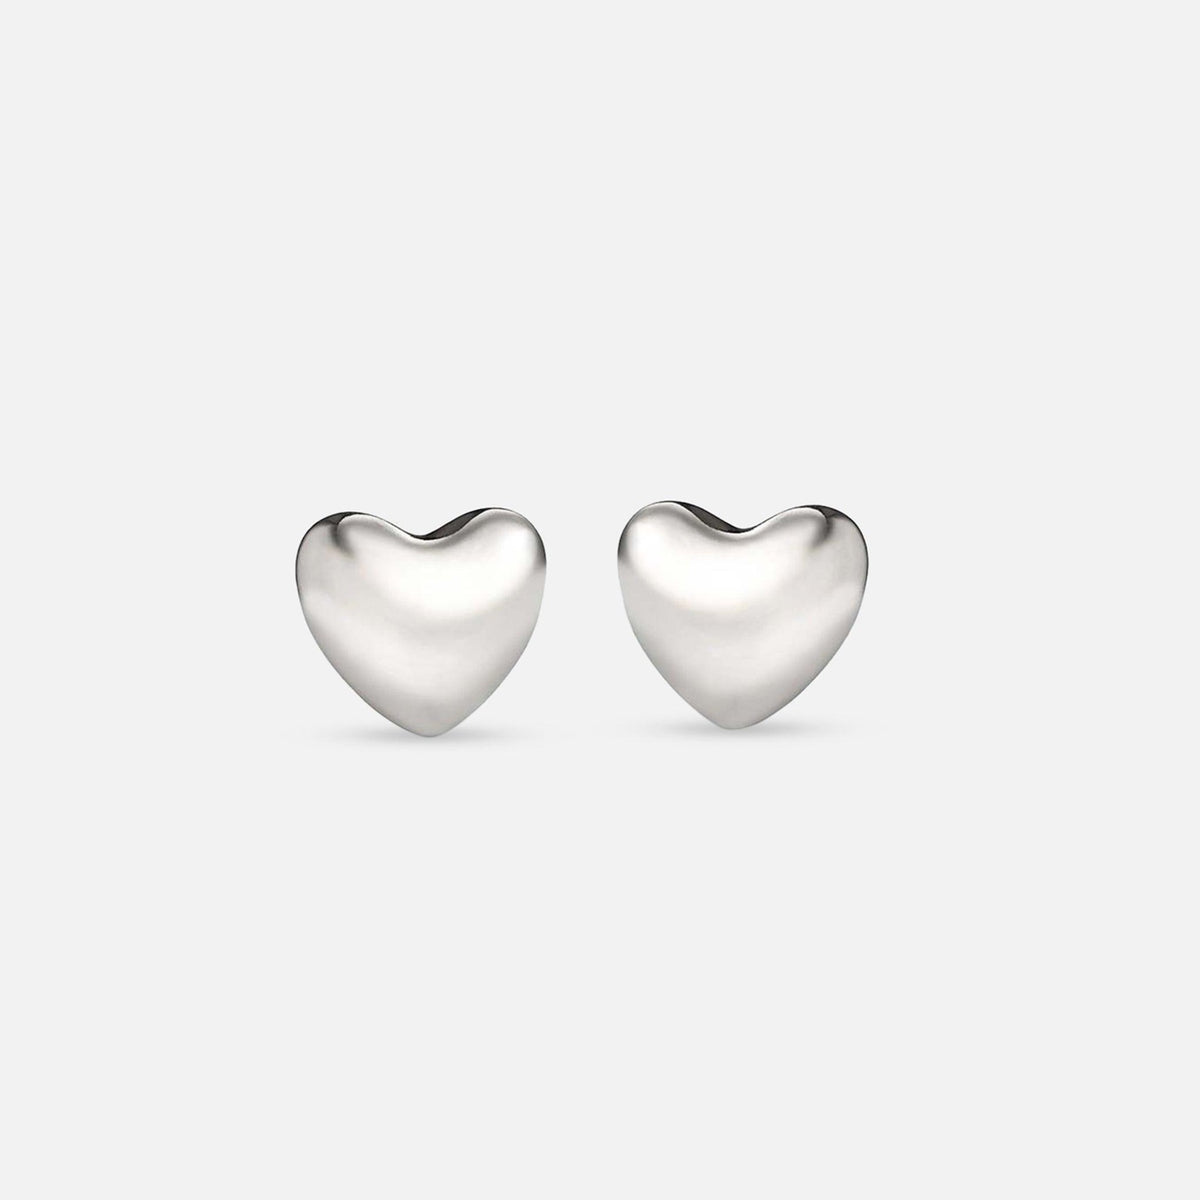 Voluptuous Heart Earrings, Small